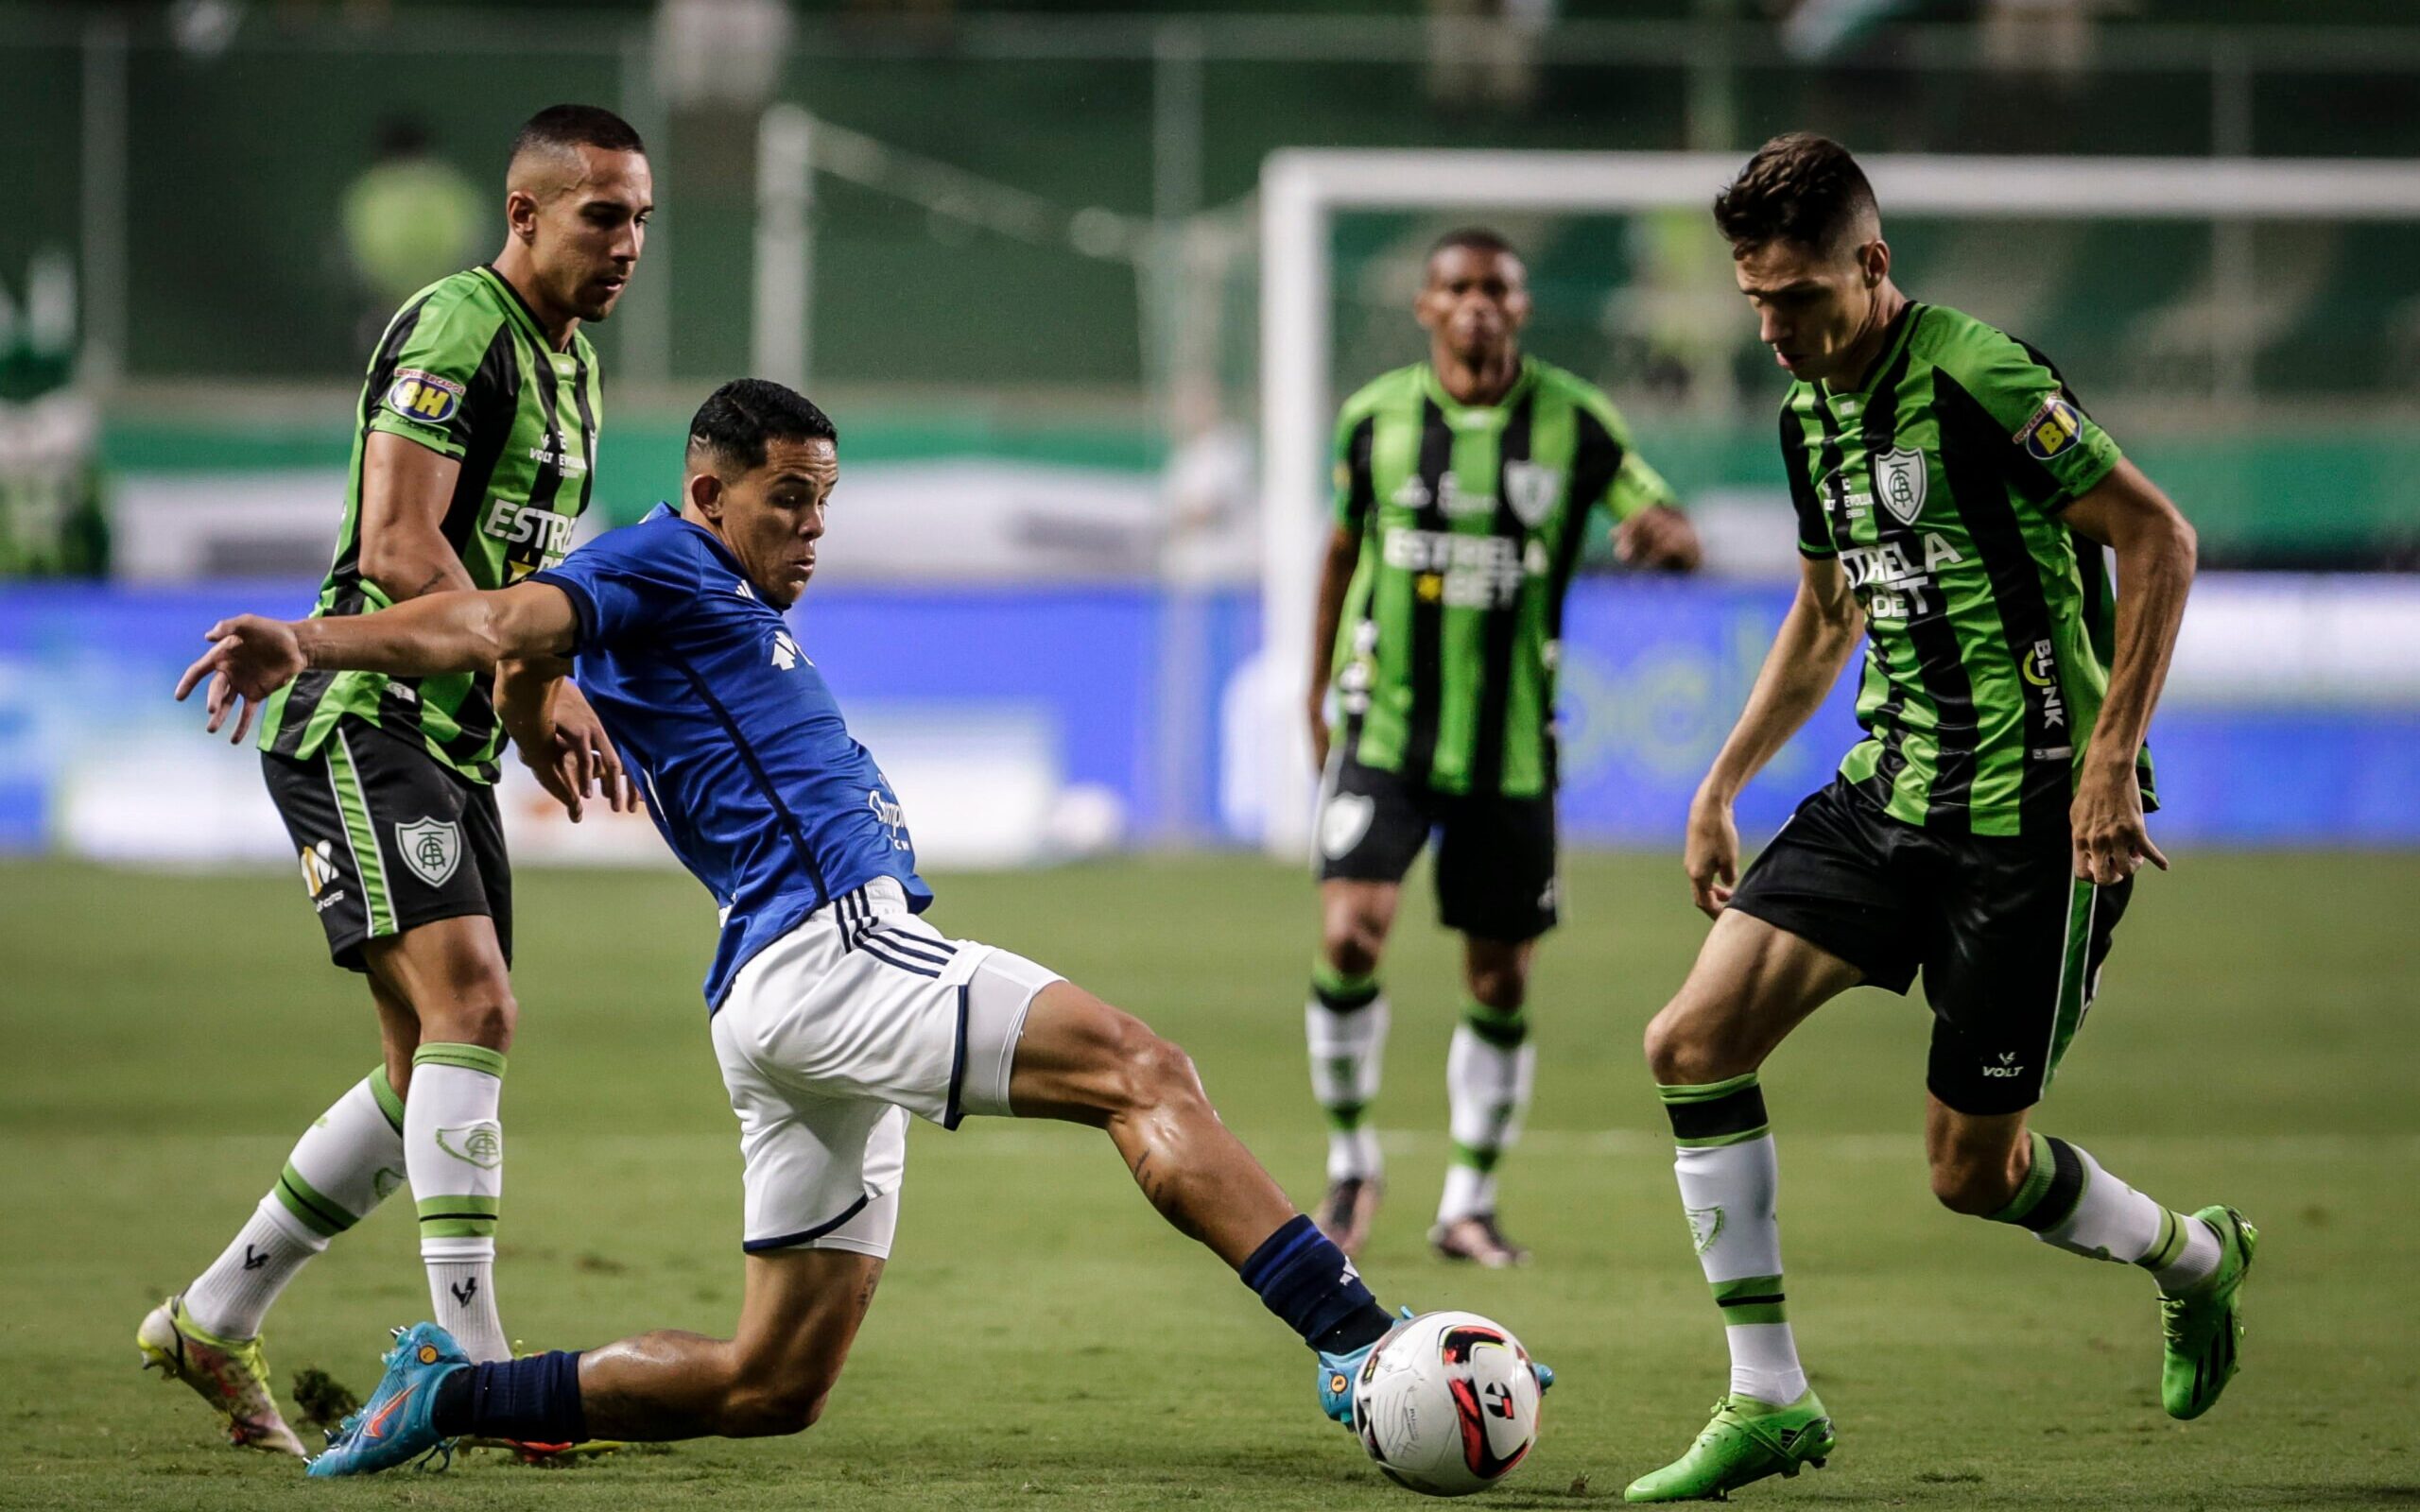 Casas de aposta apontam Atlético favoritaço no clássico contra o Cruzeiro -  Superesportes